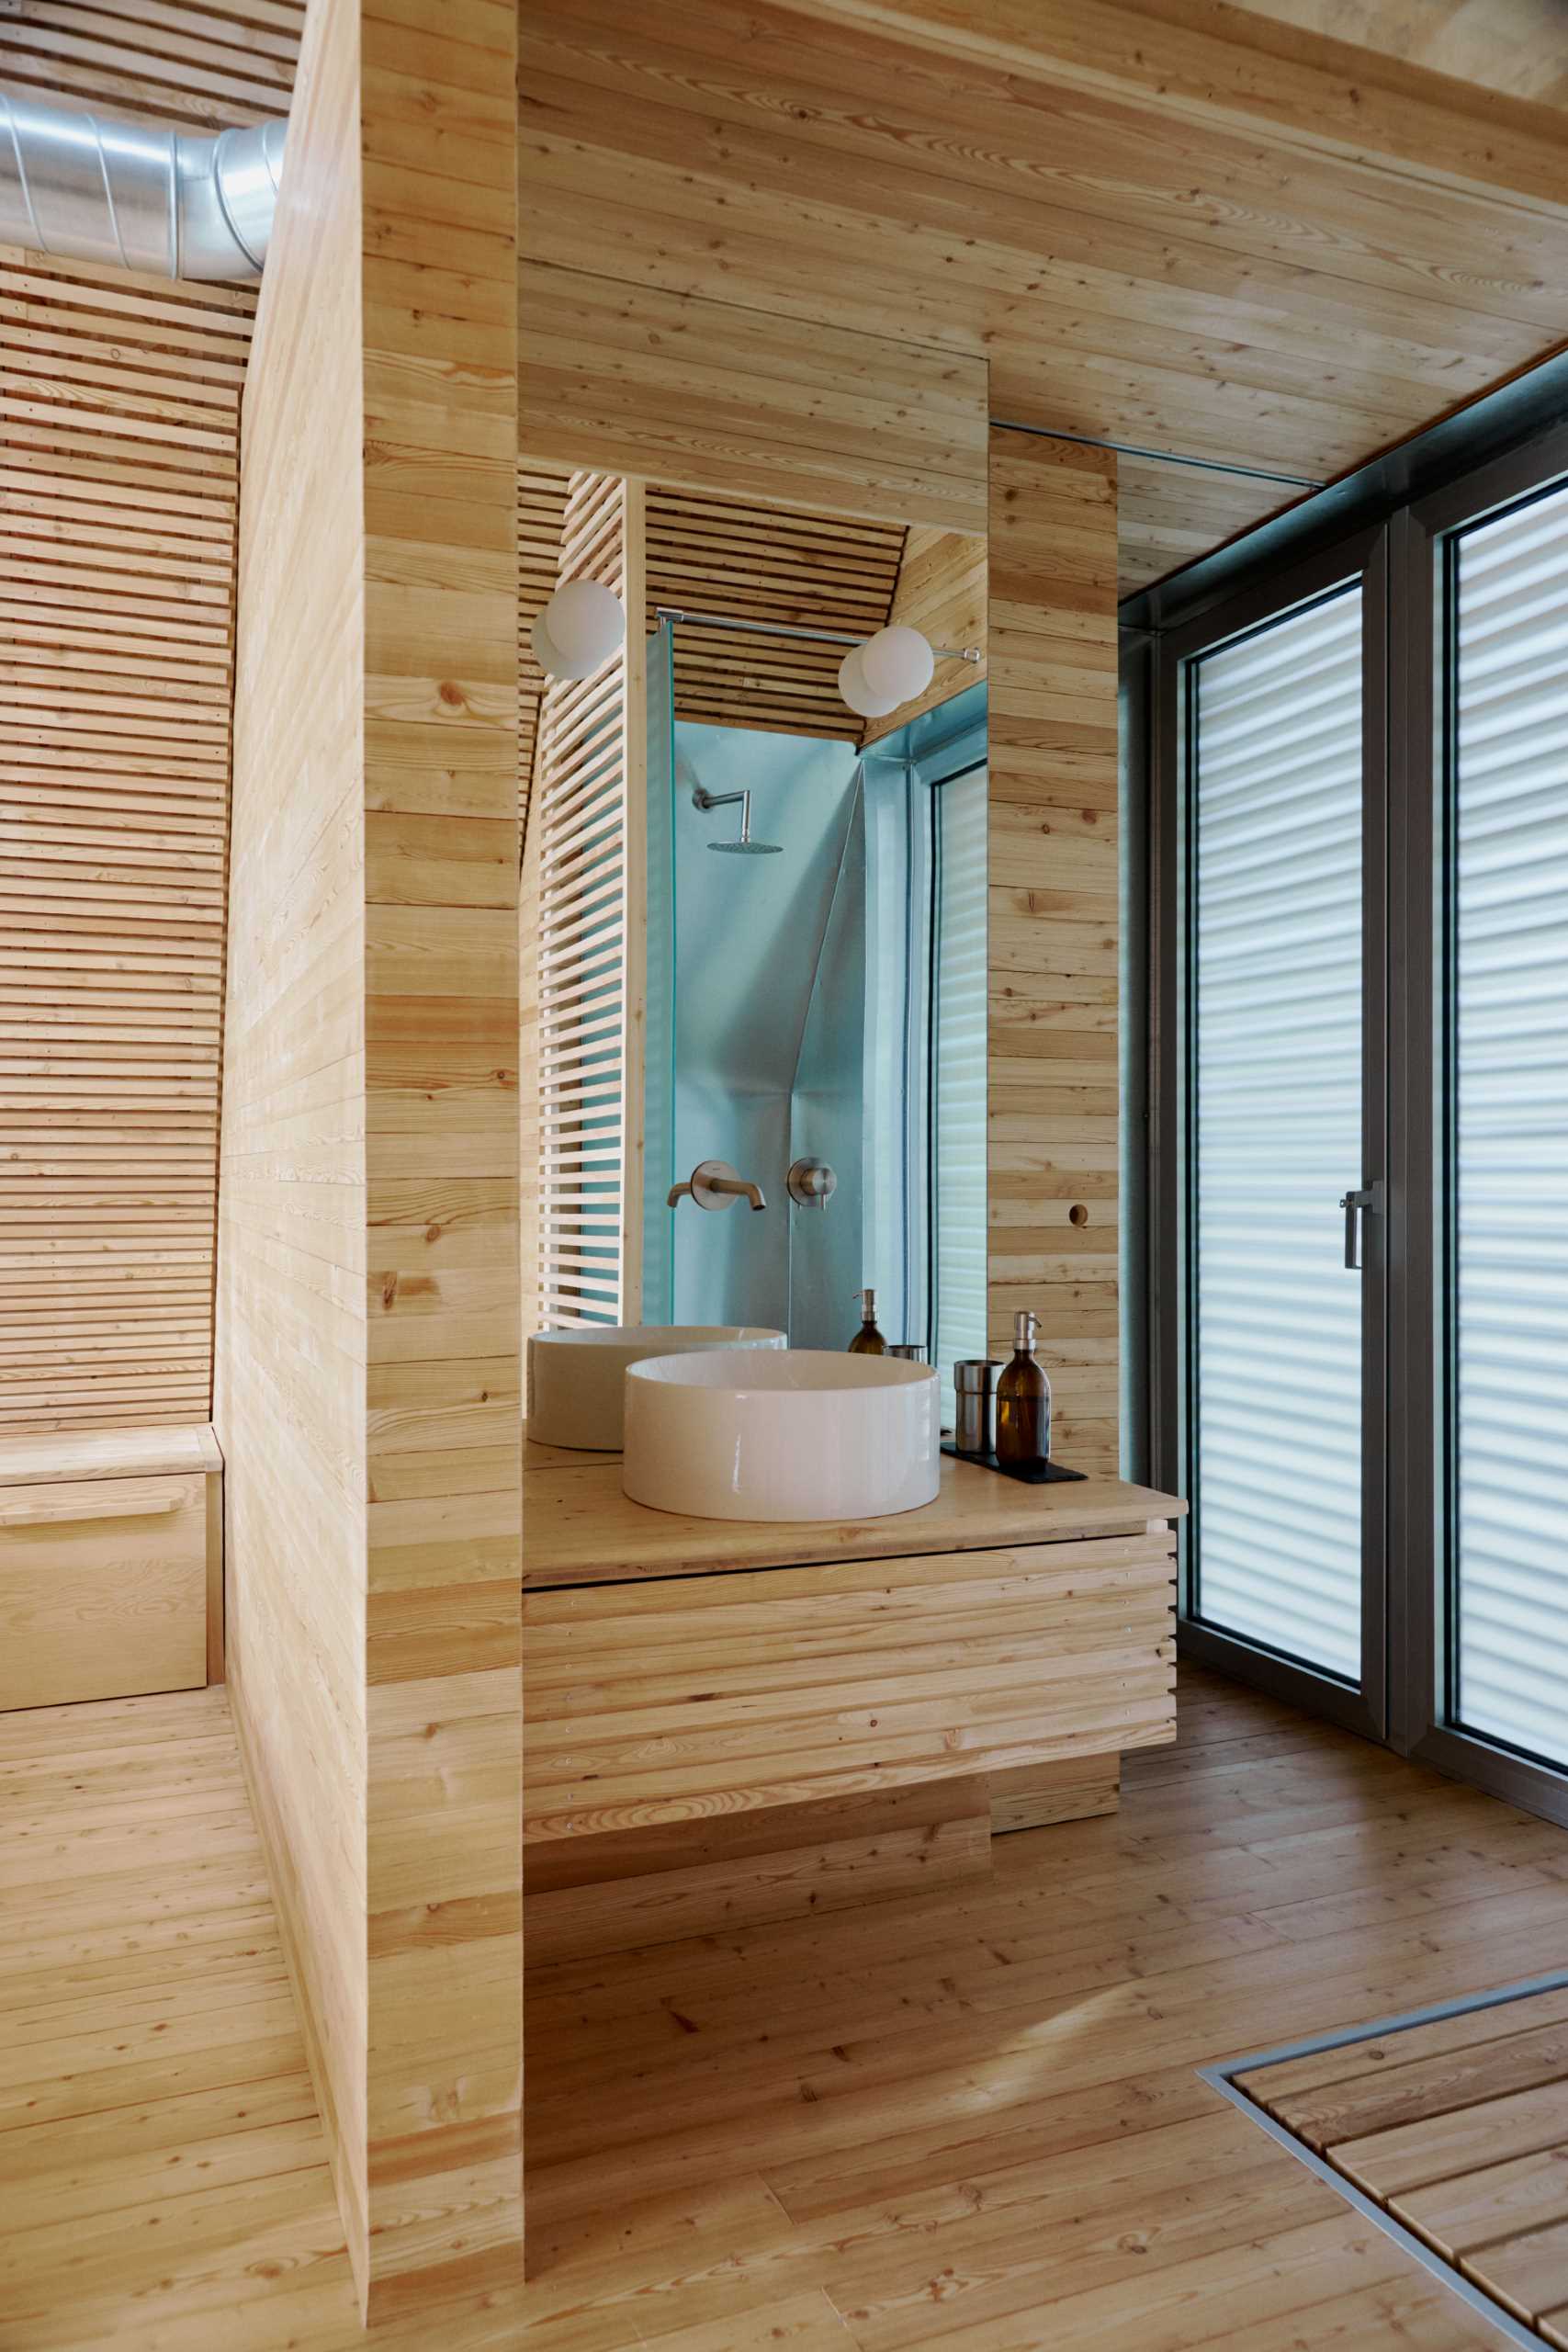 حداقل حمام ها شامل روشویی چوبی ساده با یک آینه بلند و دوش می شود.